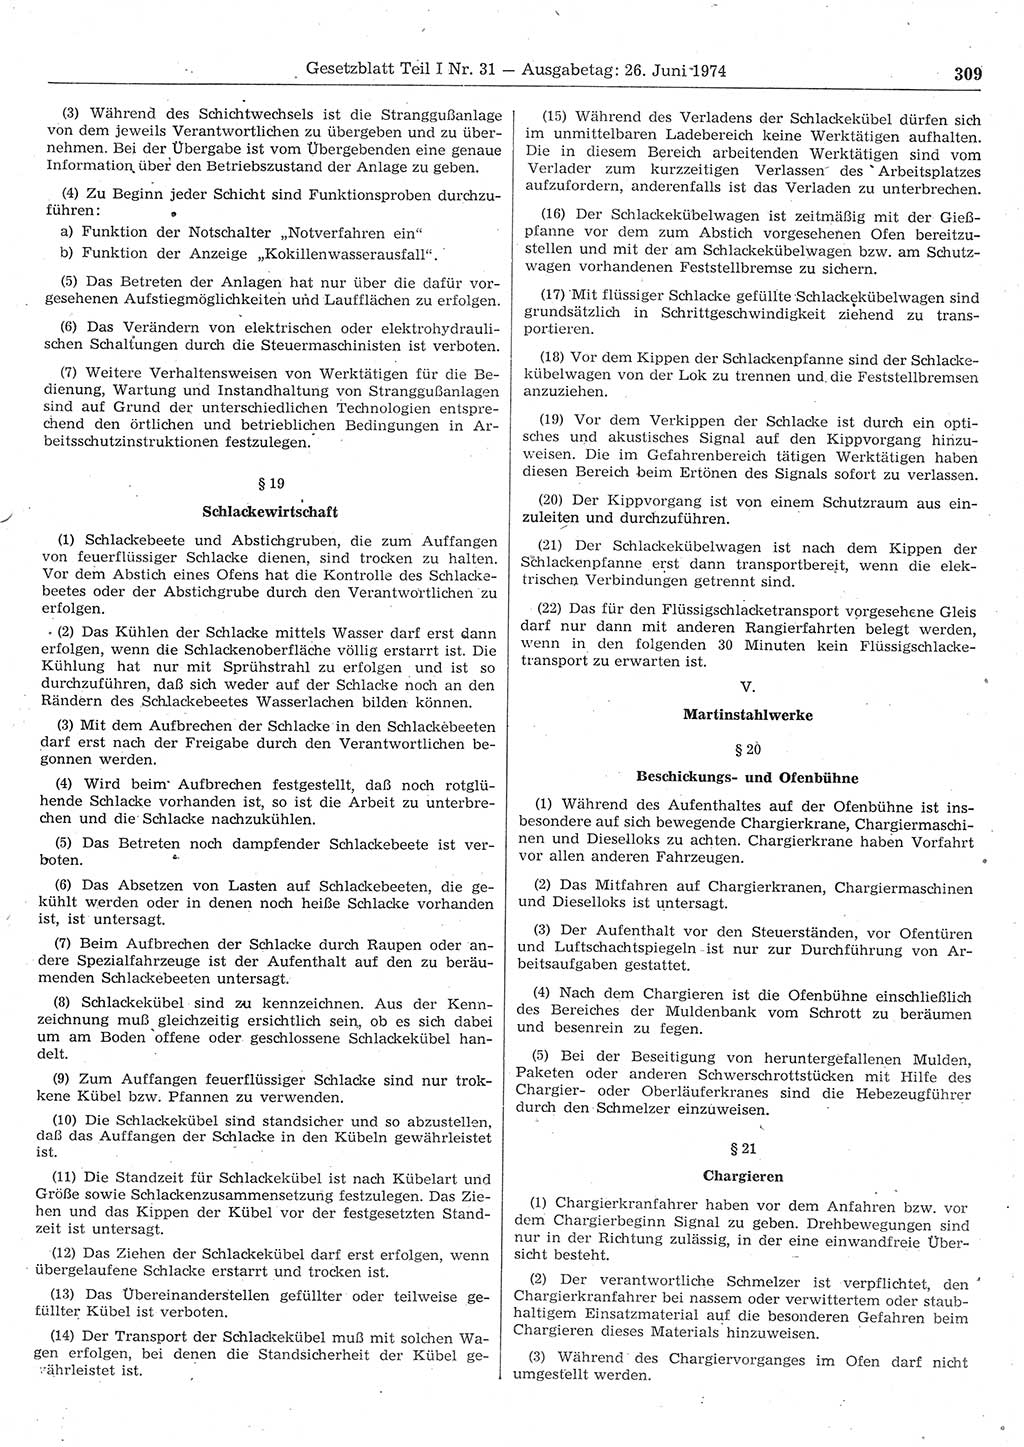 Gesetzblatt (GBl.) der Deutschen Demokratischen Republik (DDR) Teil Ⅰ 1974, Seite 309 (GBl. DDR Ⅰ 1974, S. 309)